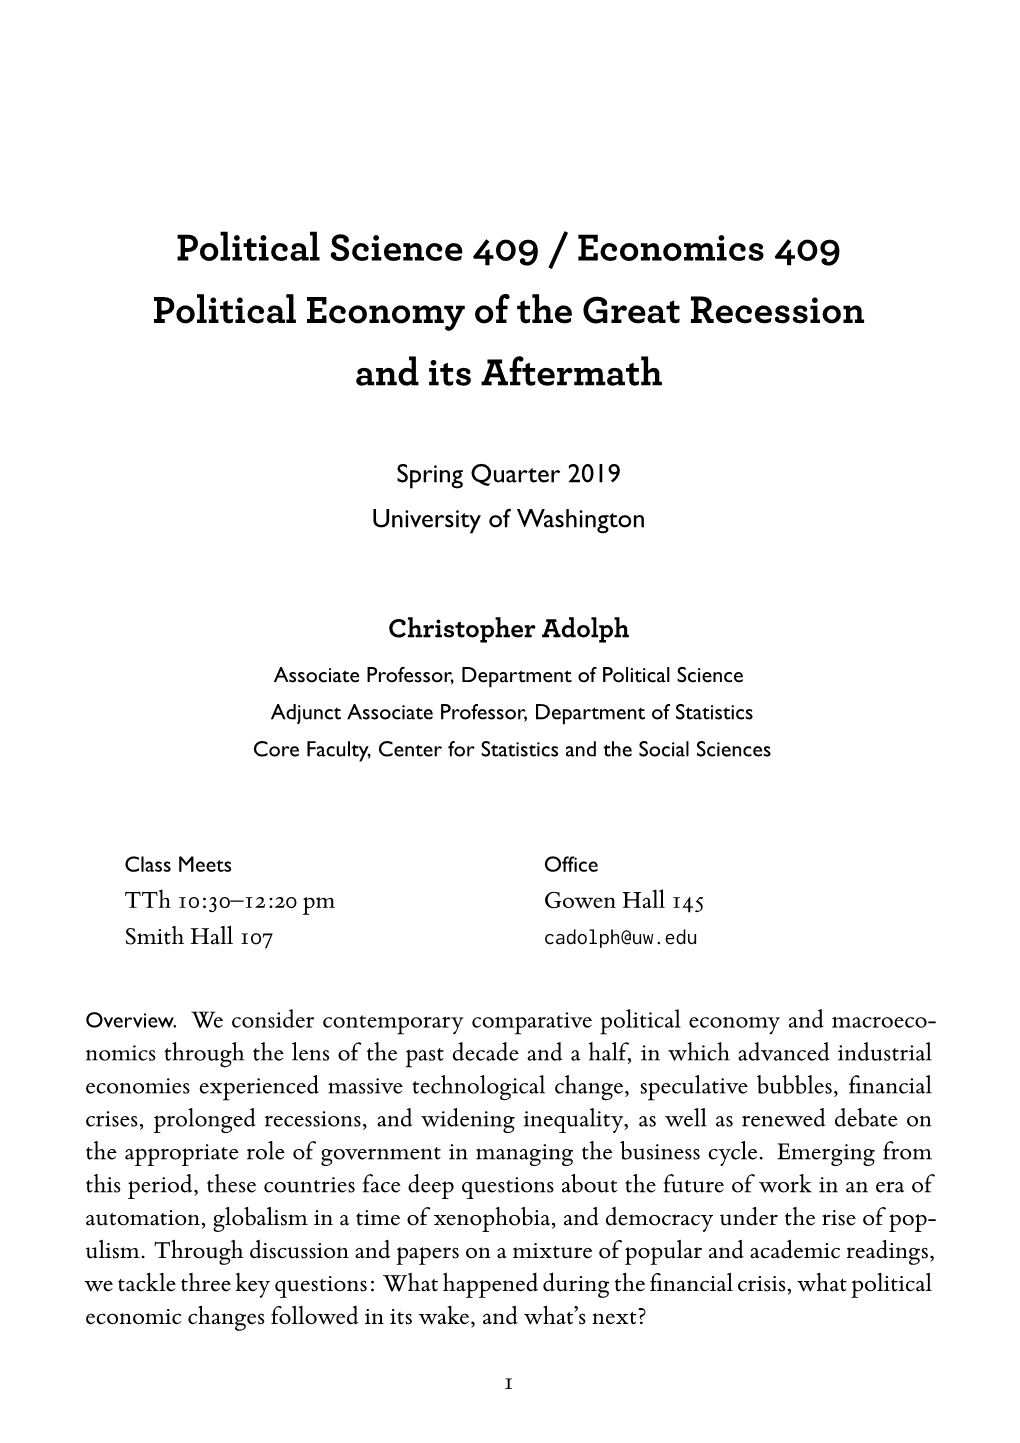 ECON 409 A: Political Economy